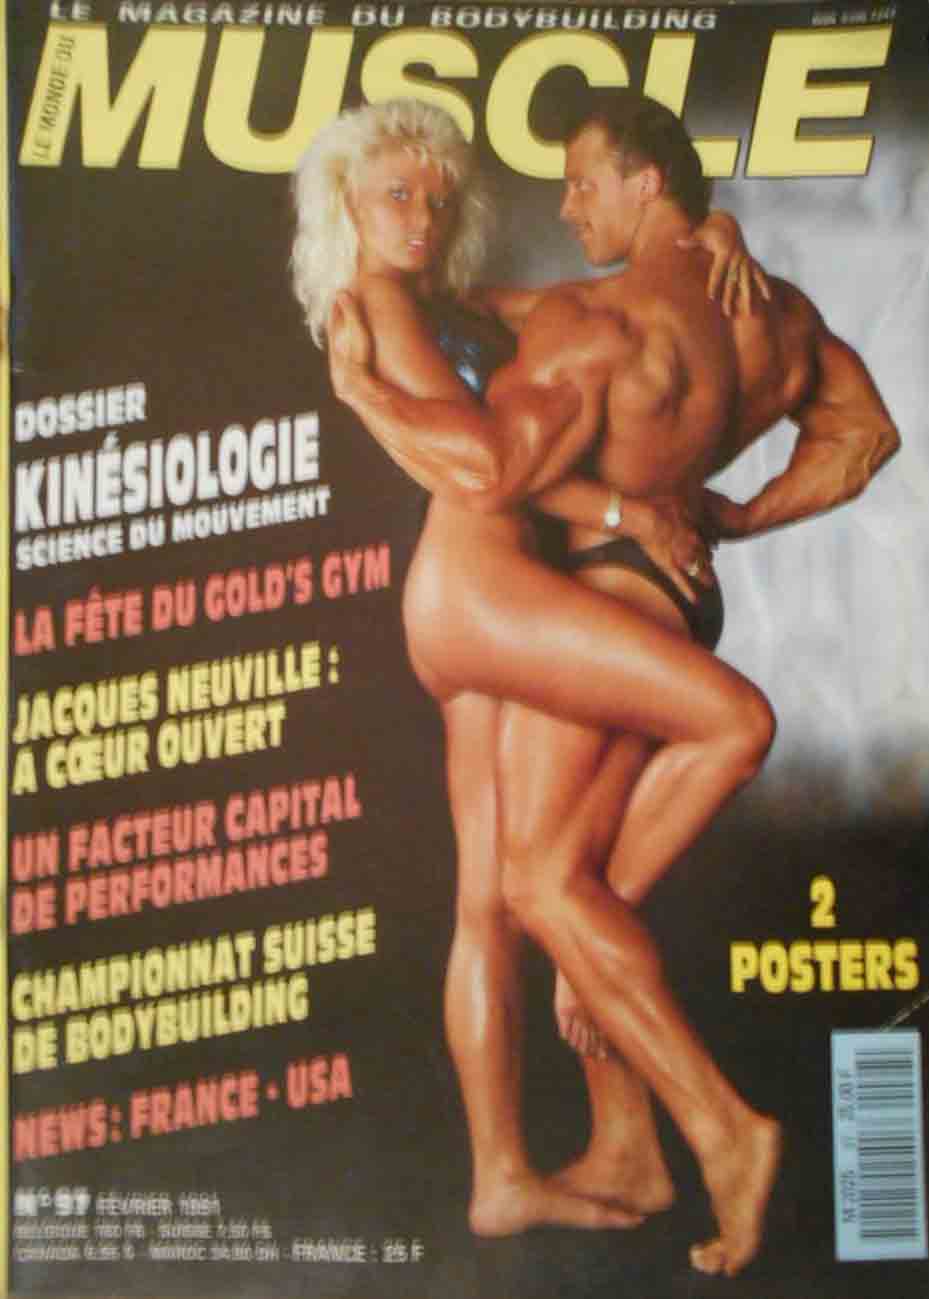 Le Monde du Muscle # 97 magazine back issue Le Monde du Muscle magizine back copy 